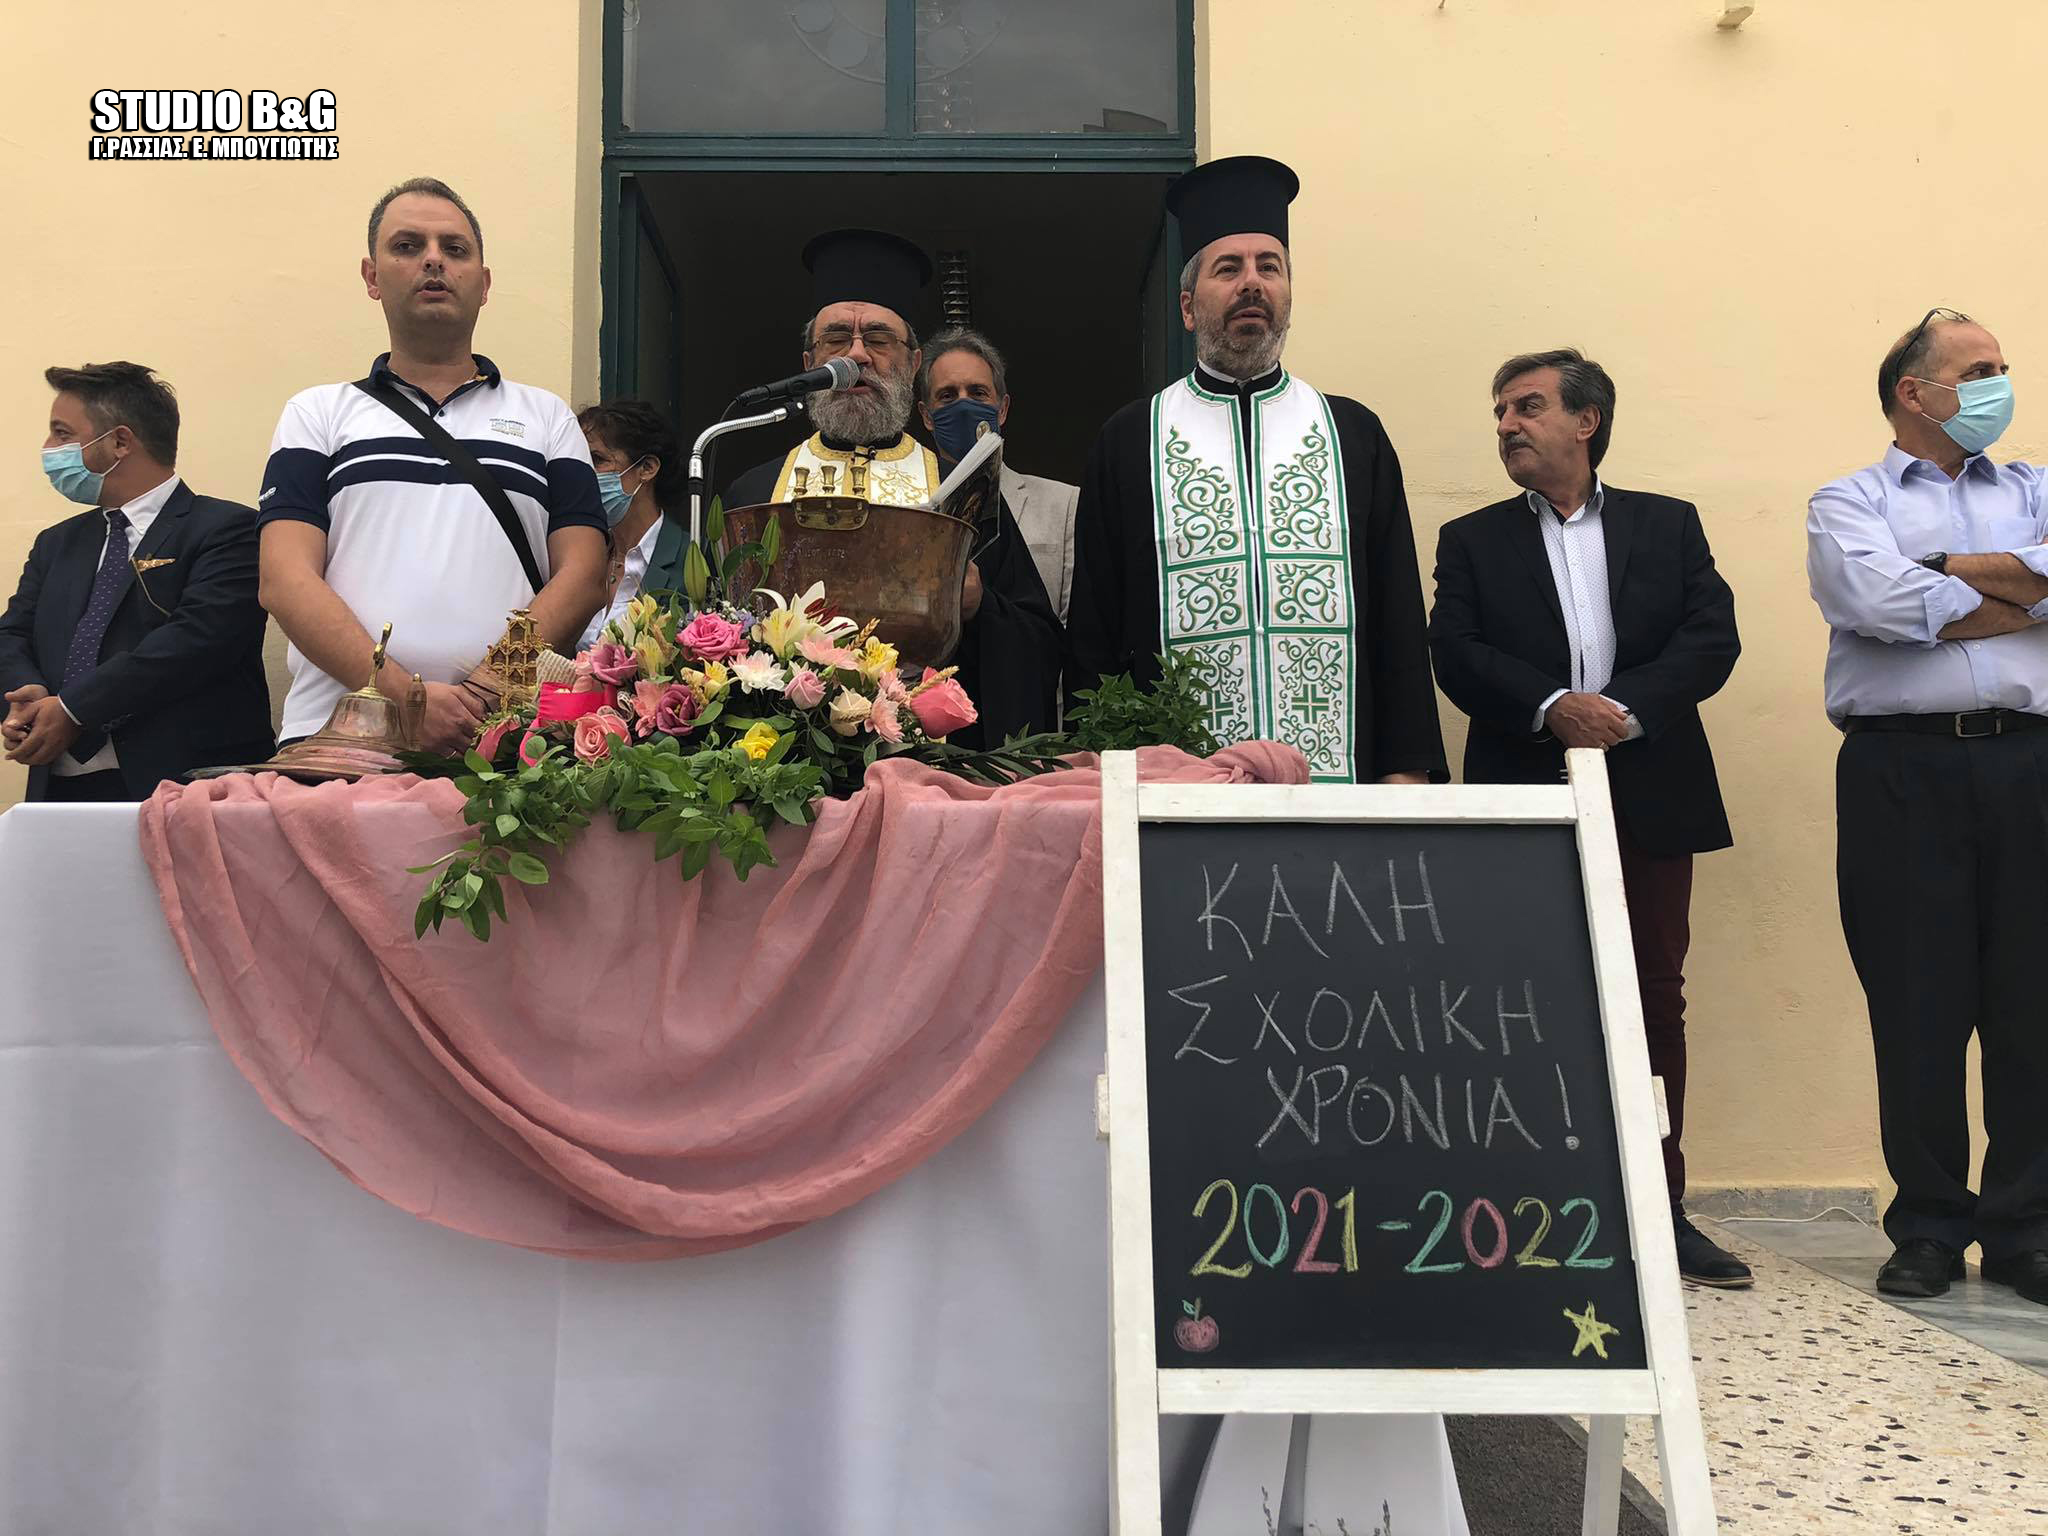 Αγιασμός στο πρώτο Καποδιστριακό Δημοτικό σχολείο στην πόλη του Αργούς